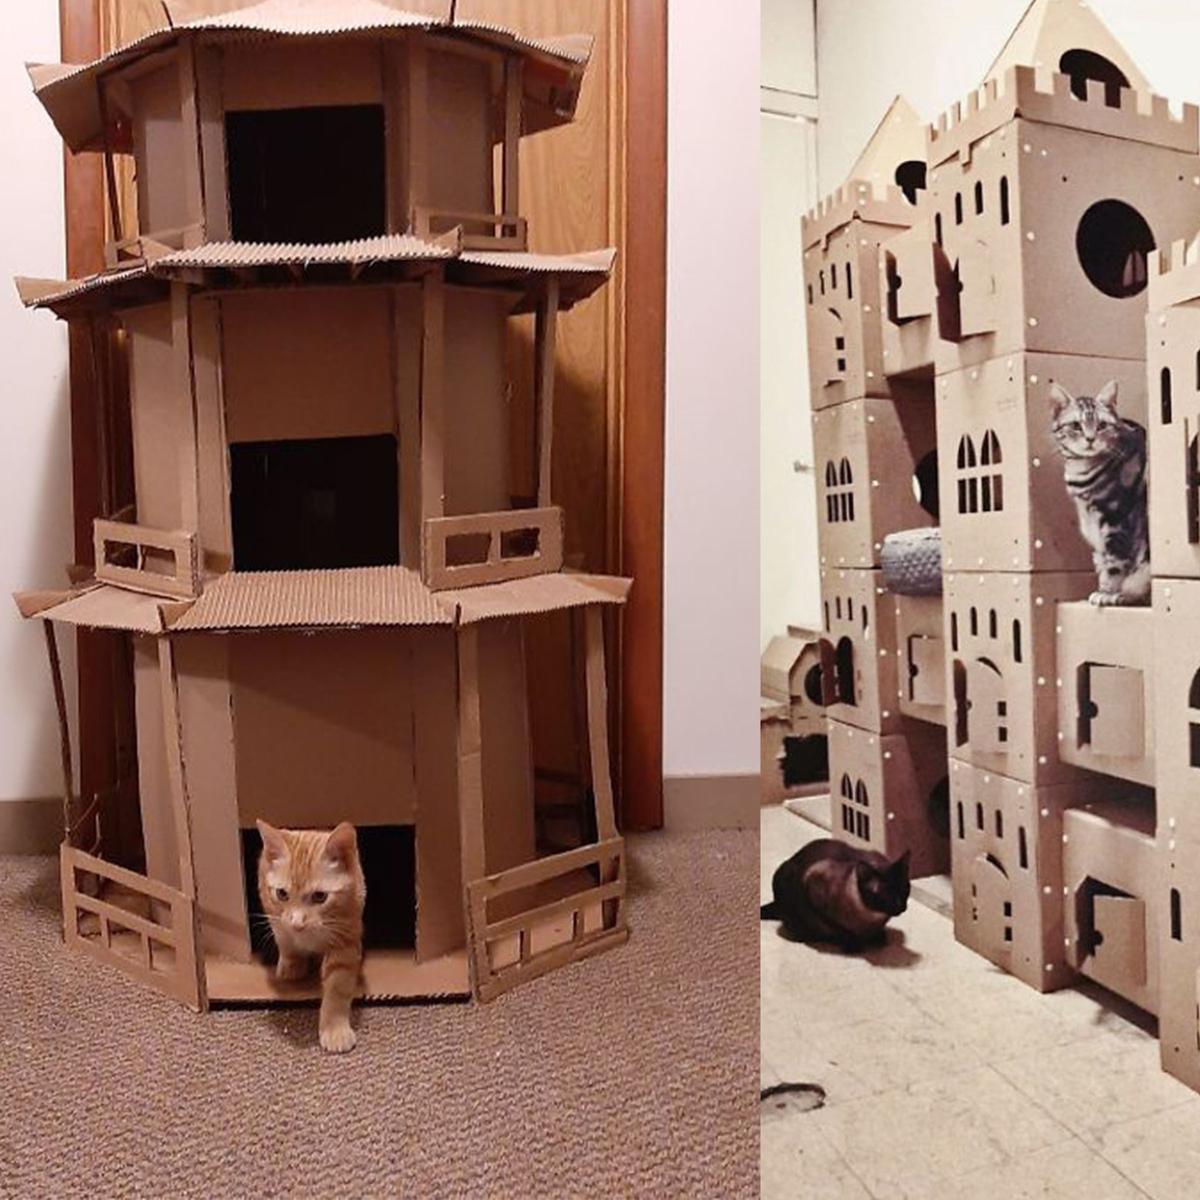 Rumah Kucing Dari Kardus - KibrisPDR